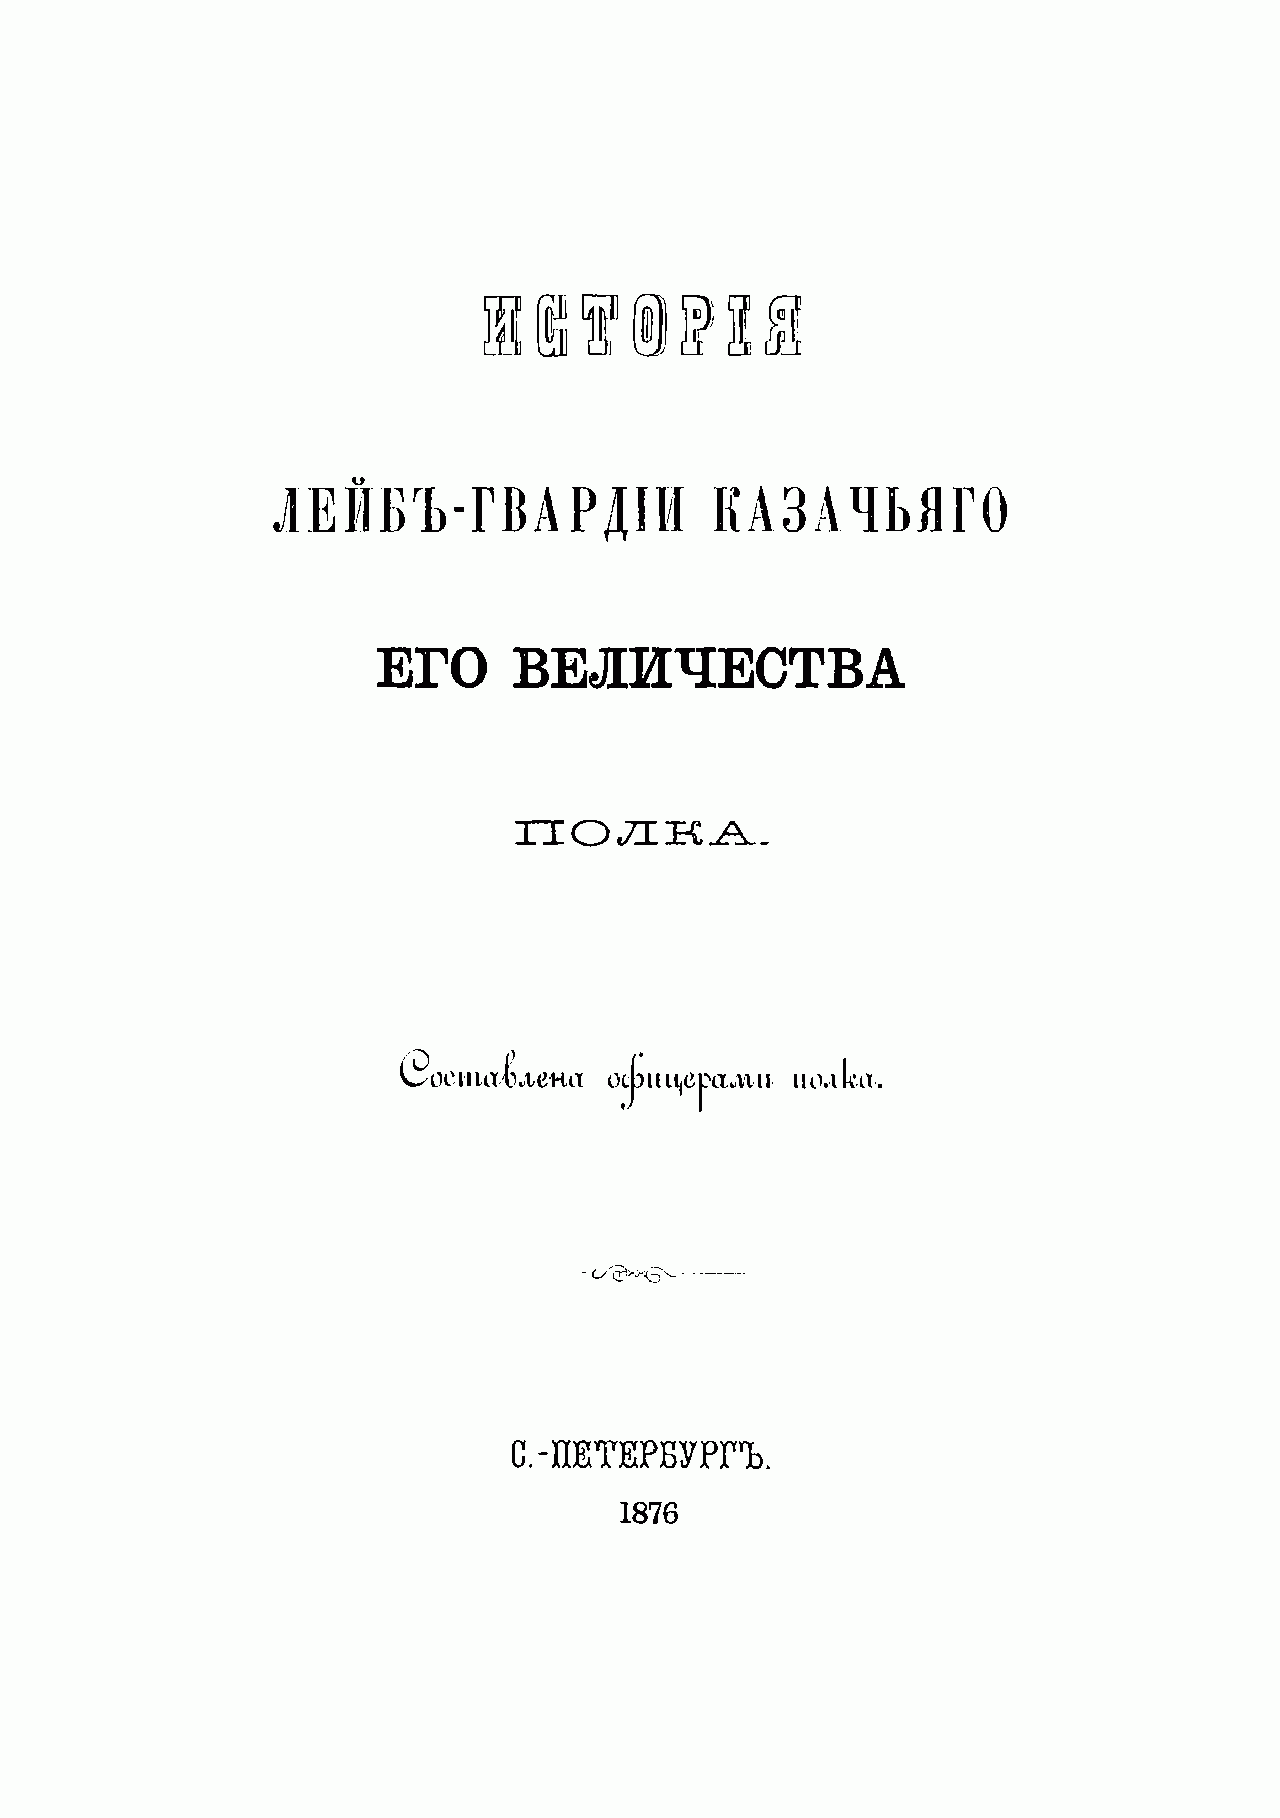 История лейб гвардии казачьего его Величества полка книга